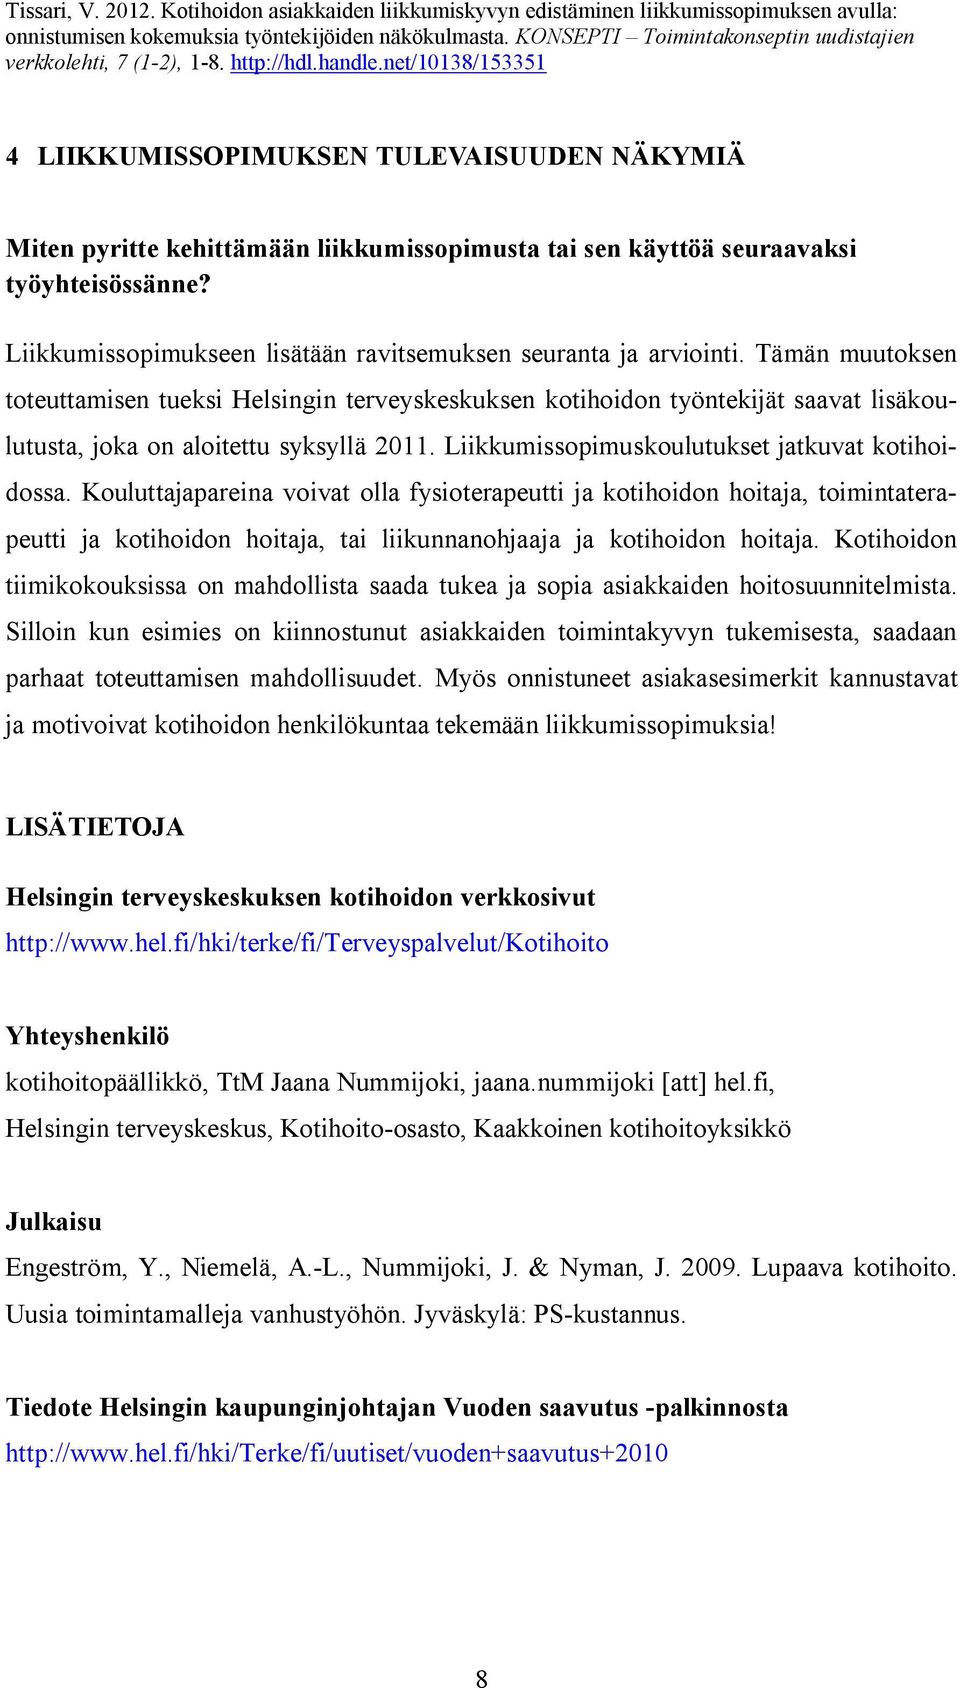 Tämän muutoksen toteuttamisen tueksi Helsingin terveyskeskuksen kotihoidon työntekijät saavat lisäkoulutusta, joka on aloitettu syksyllä 2011. Liikkumissopimuskoulutukset jatkuvat kotihoidossa.